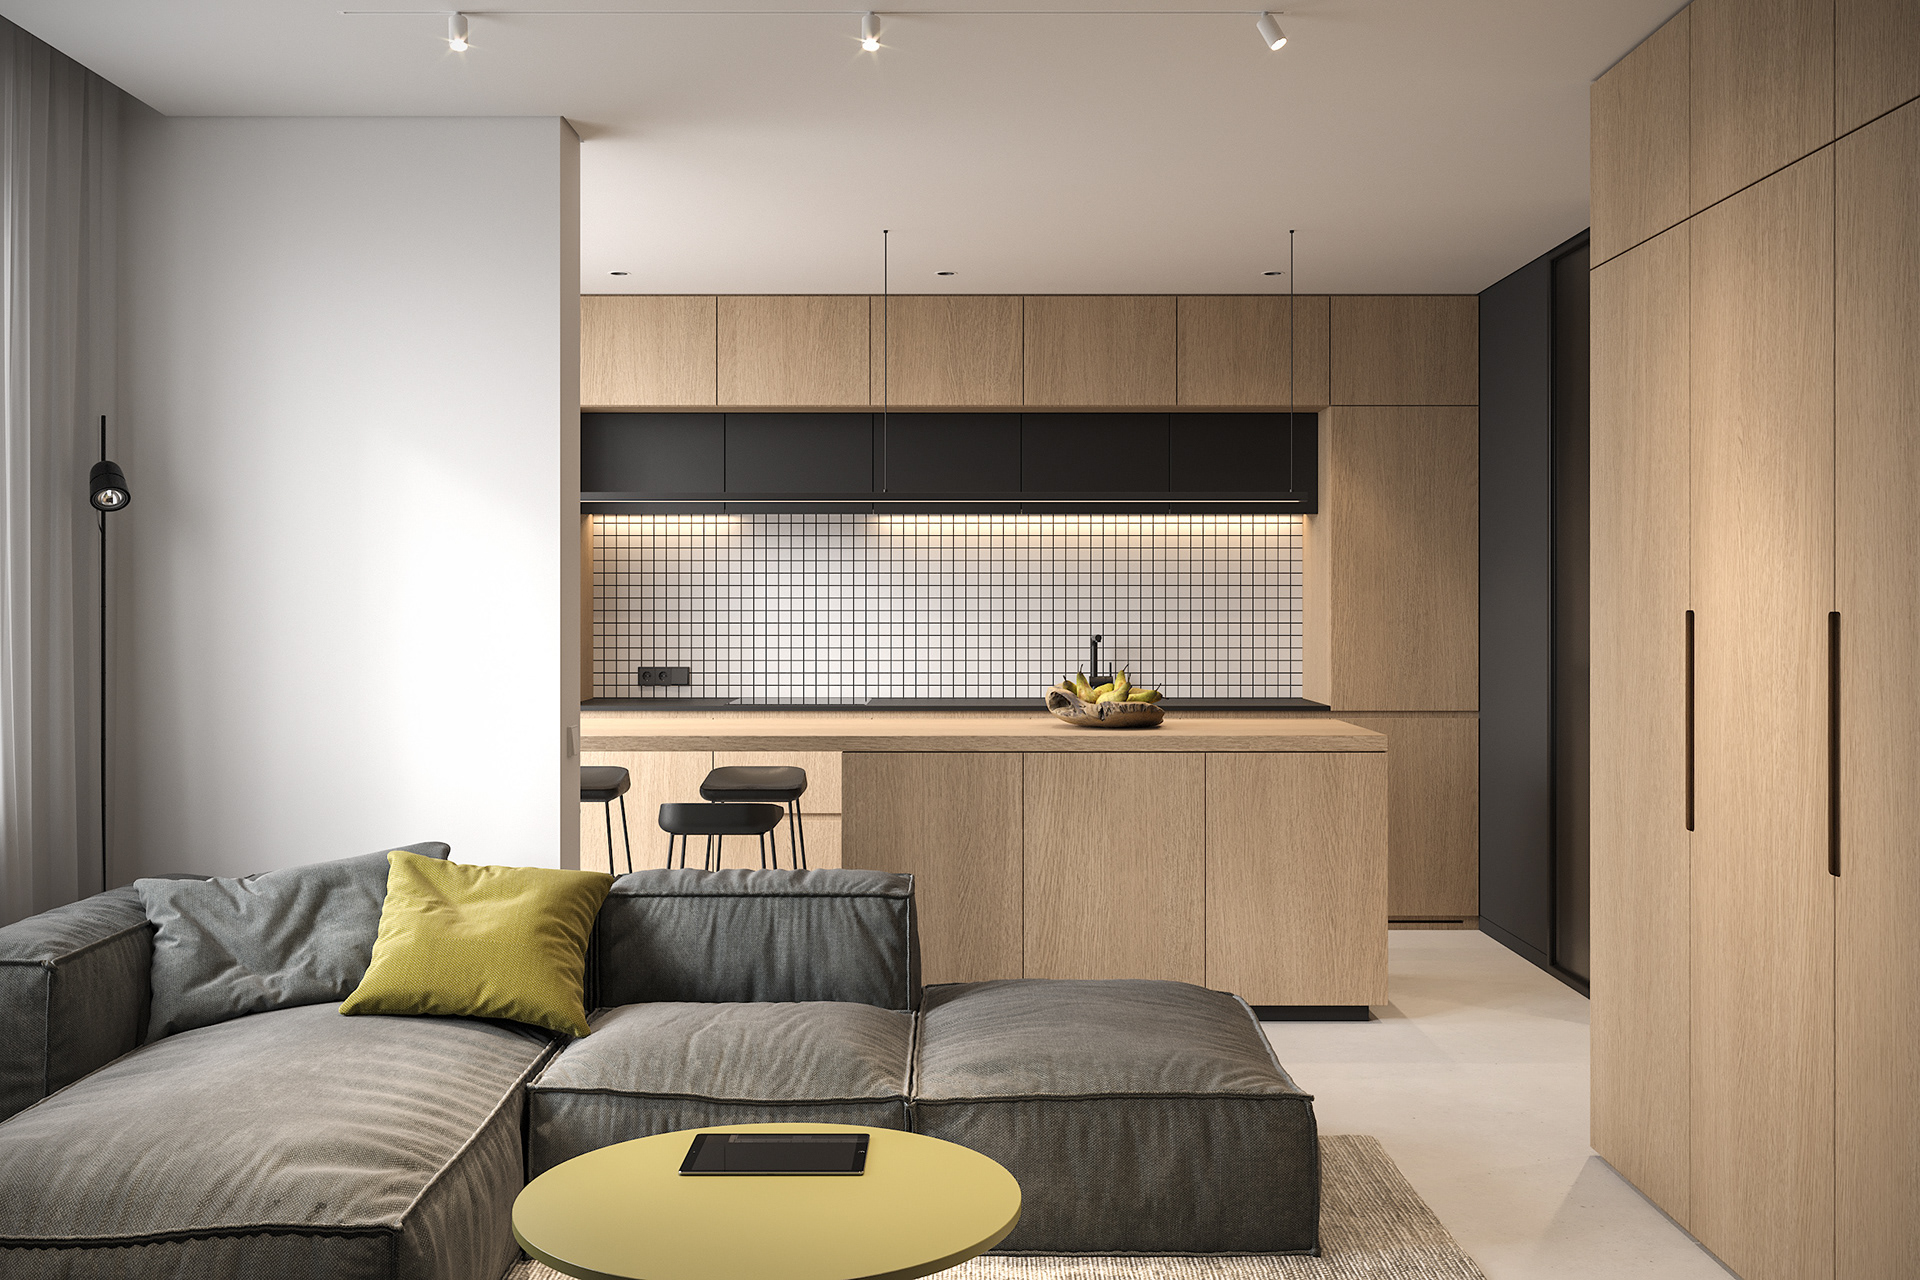 IconP - Thiết kế chung cư căn hộ phong cách hiện đại, gam màu đen độc đáo, kết hợp với gỗ và nhấn màu vàng ấn tượng